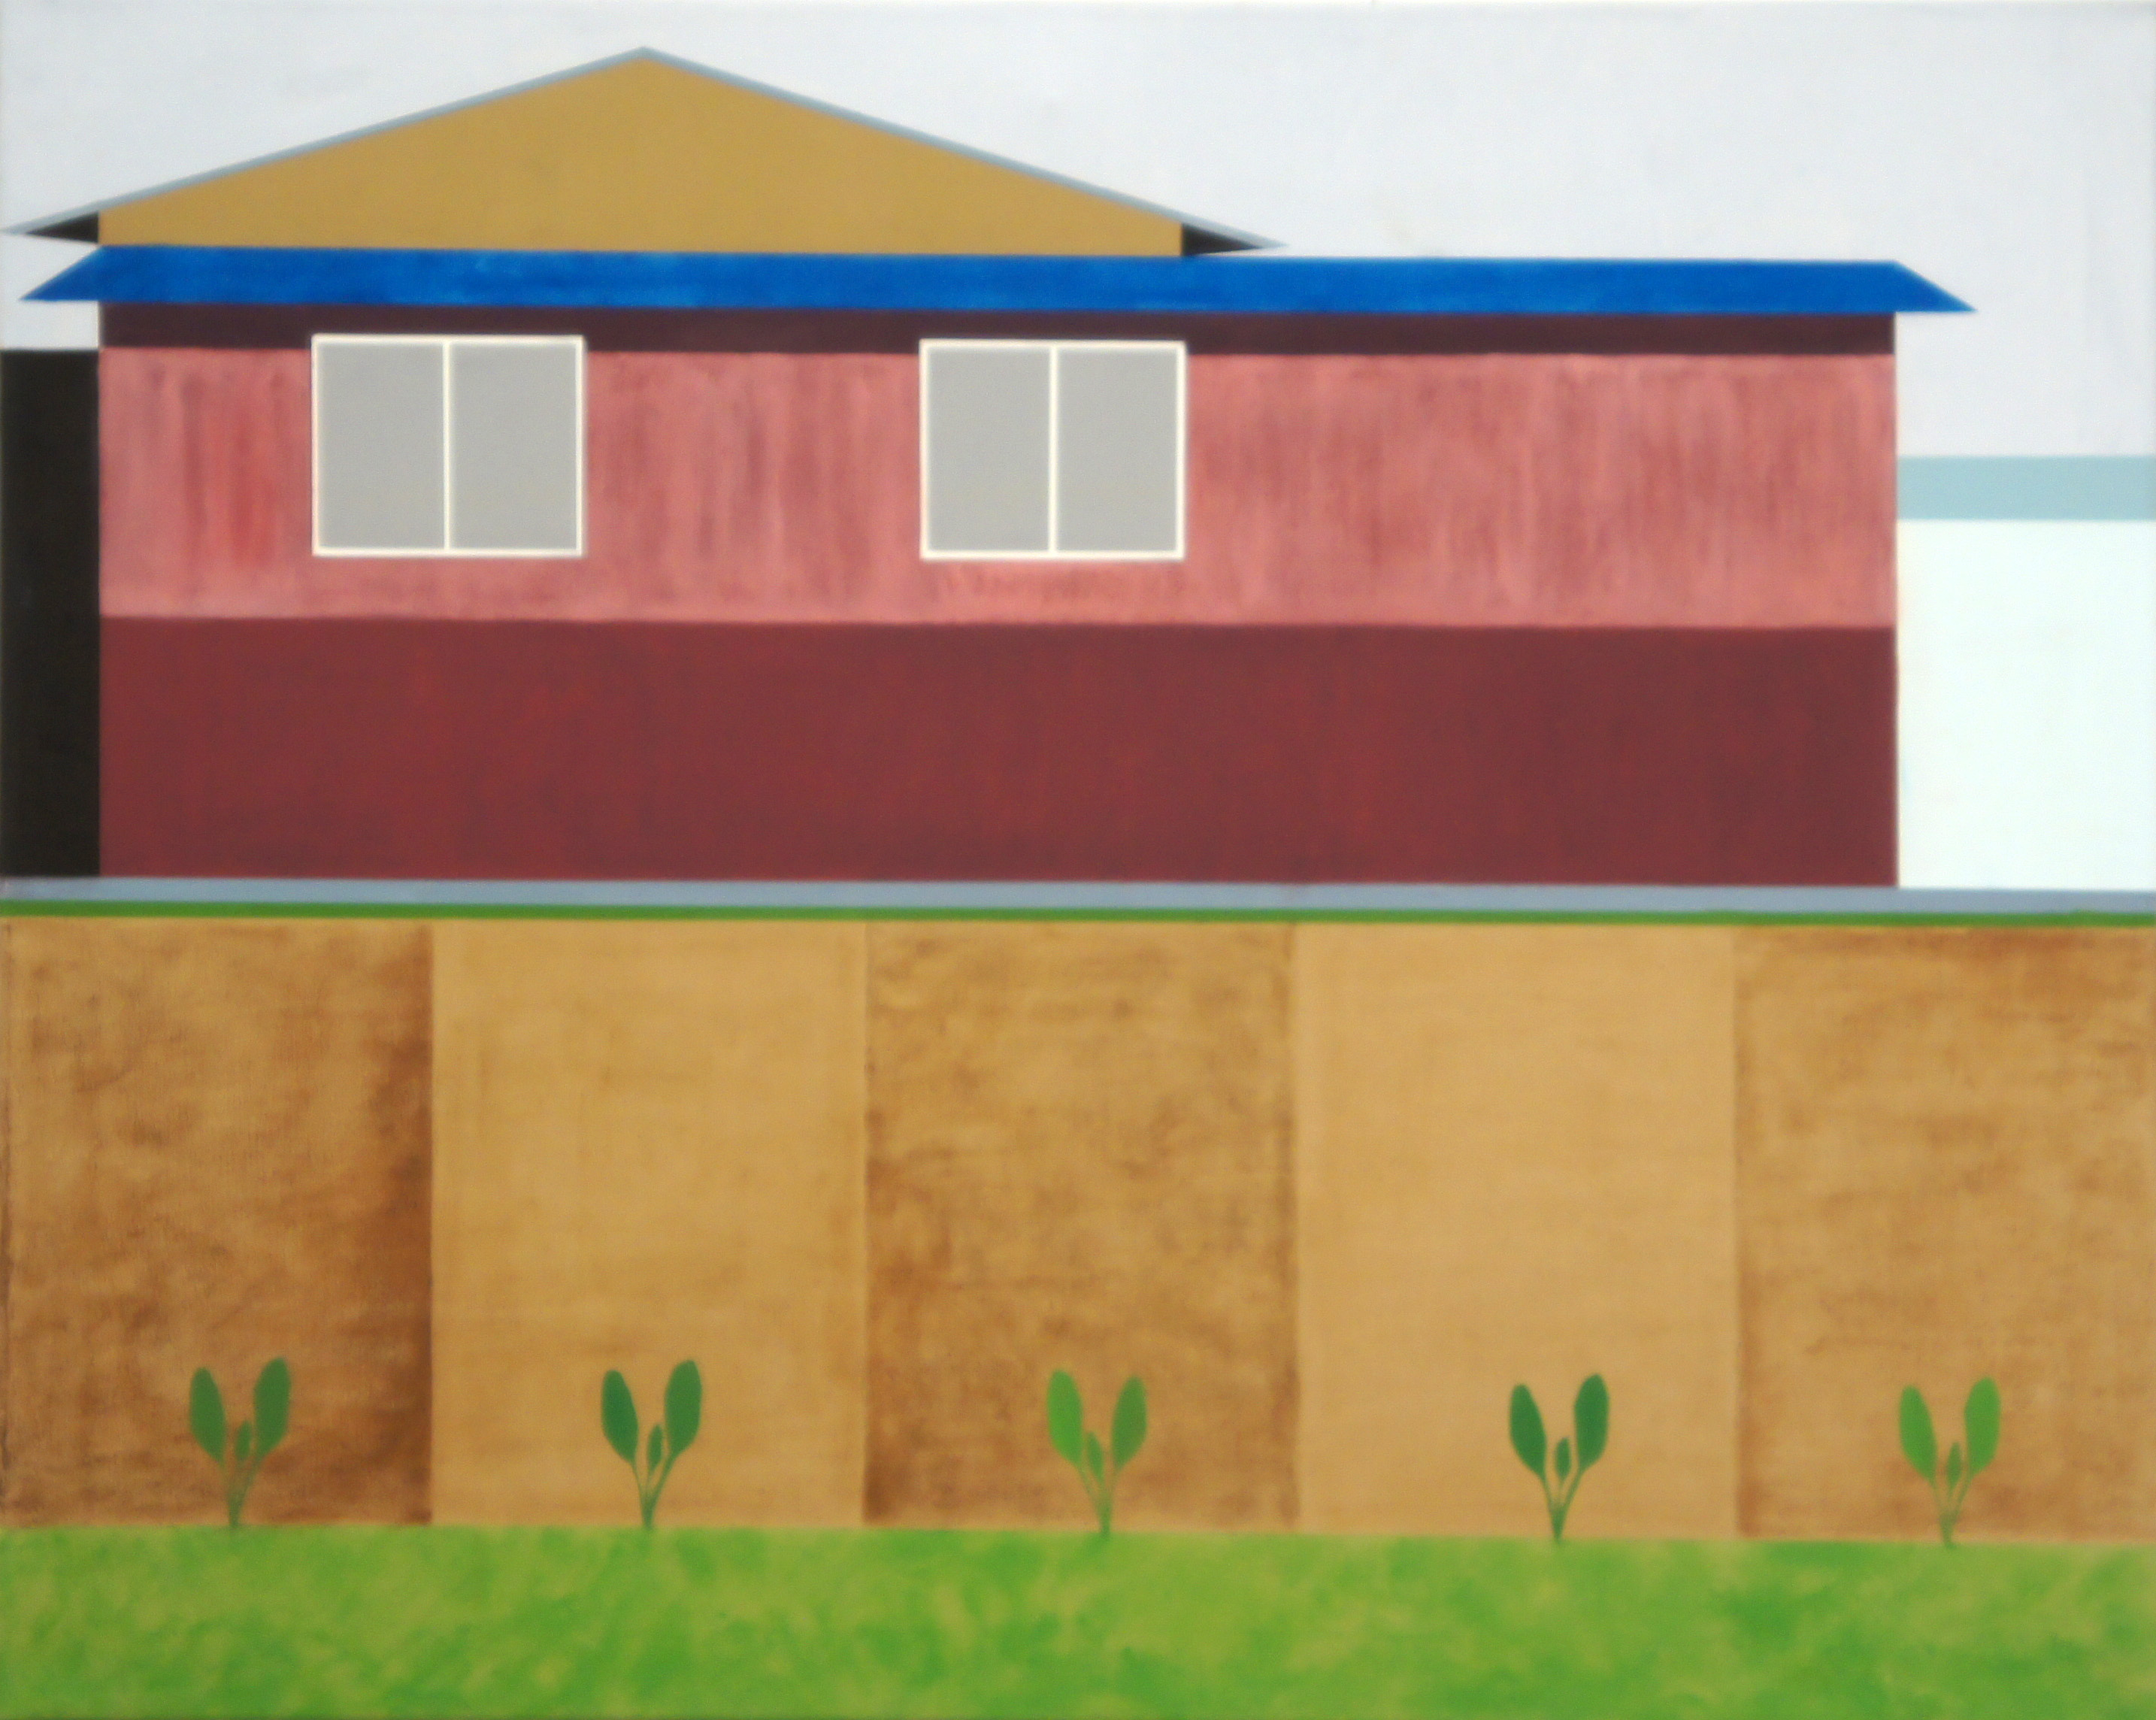 Ländliches Japan, 2010, 80 x 100 cm, Ölfarbe auf Leinwand Rural Japan, 2010, 80 x 100 cm, Oil on canvas